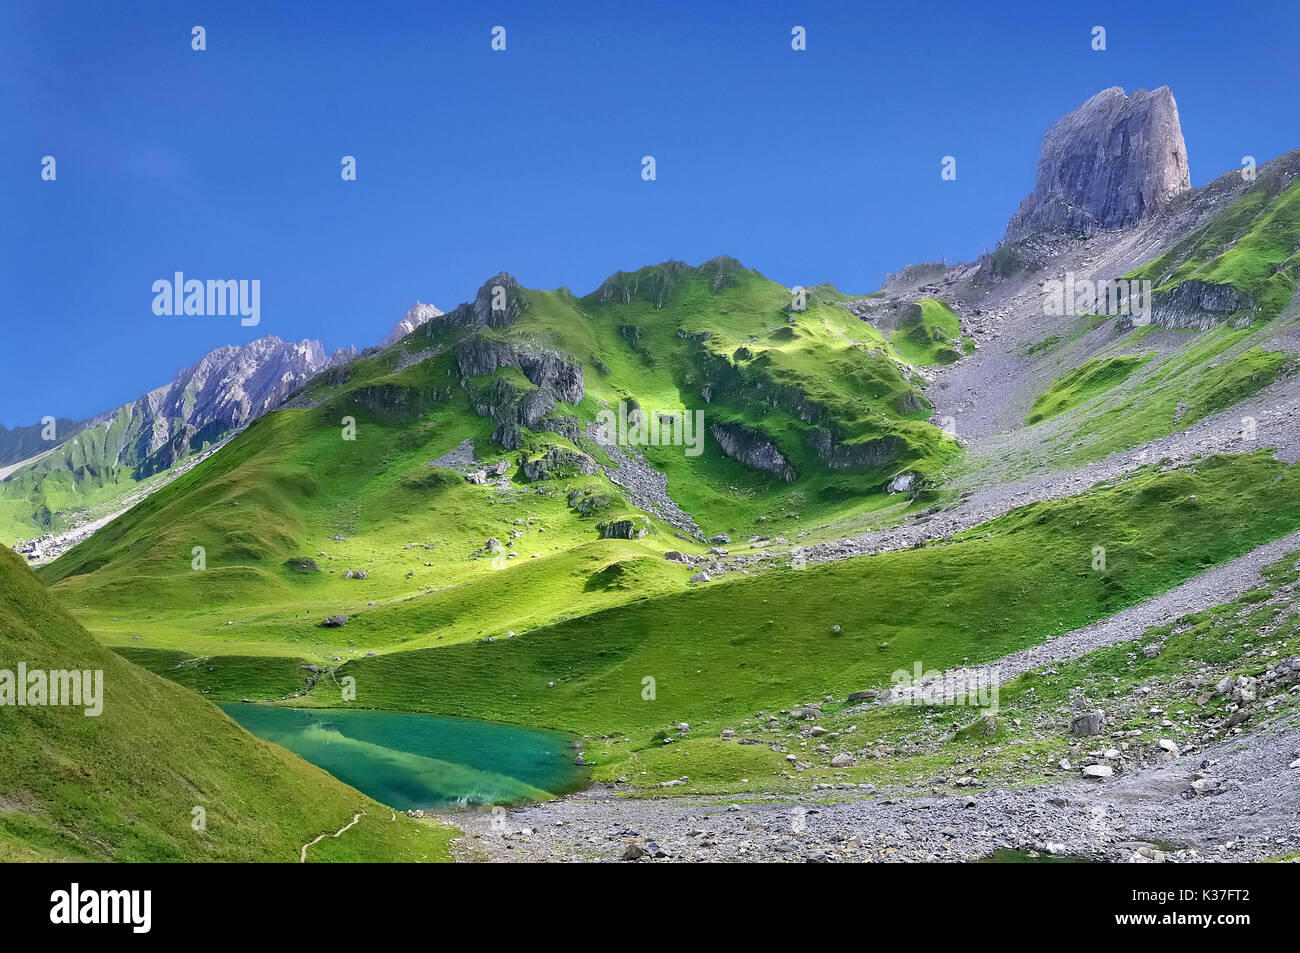 Hermoso paisaje de rocas y vegetación, con un lago de montaña Foto de stock